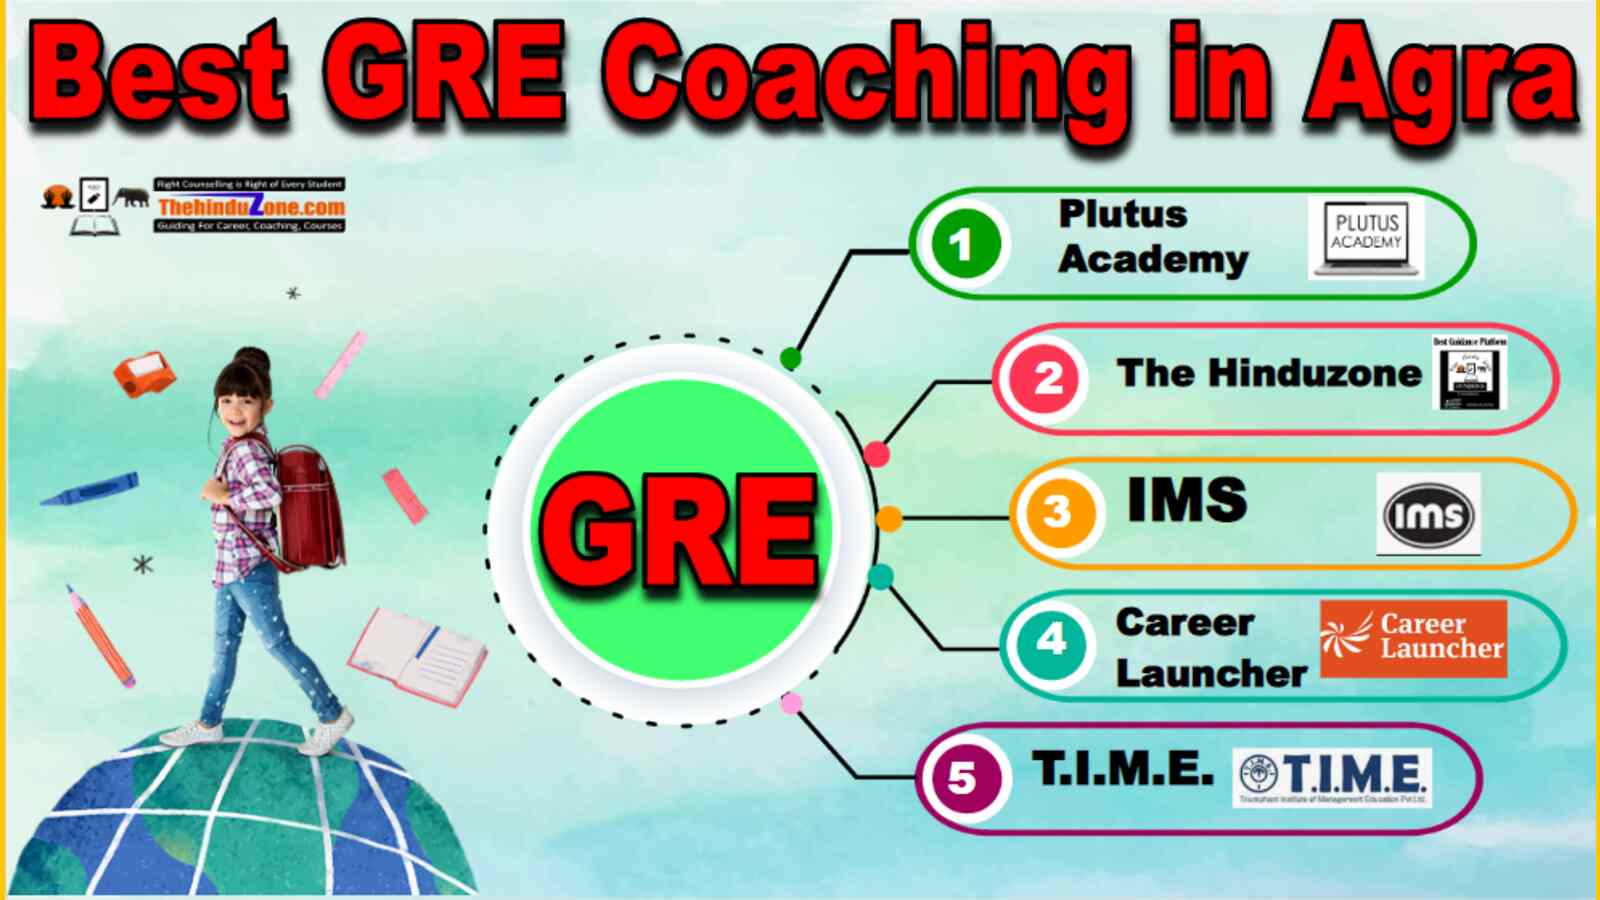 Best GRE Coaching In Agra